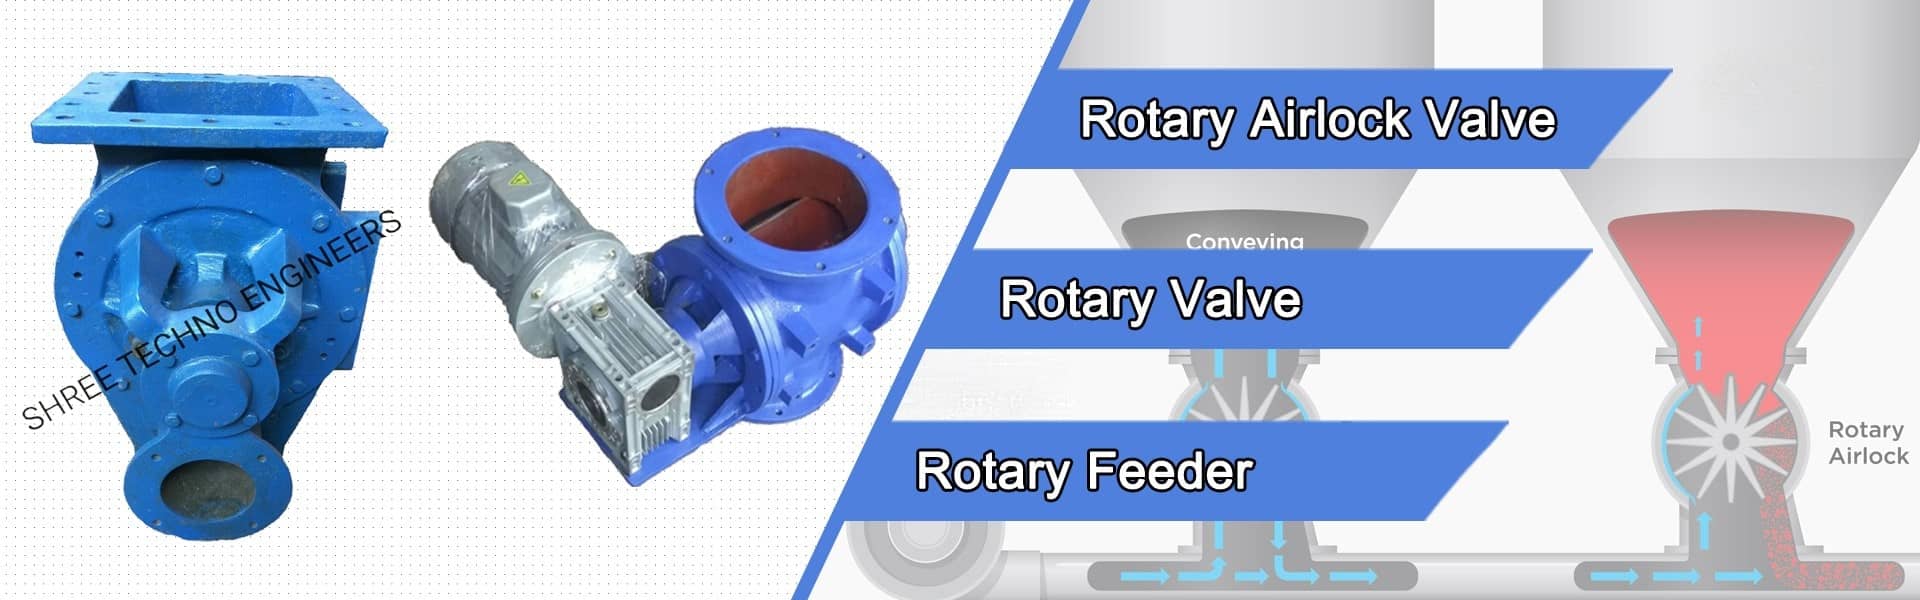 Rotary Airlock Valves